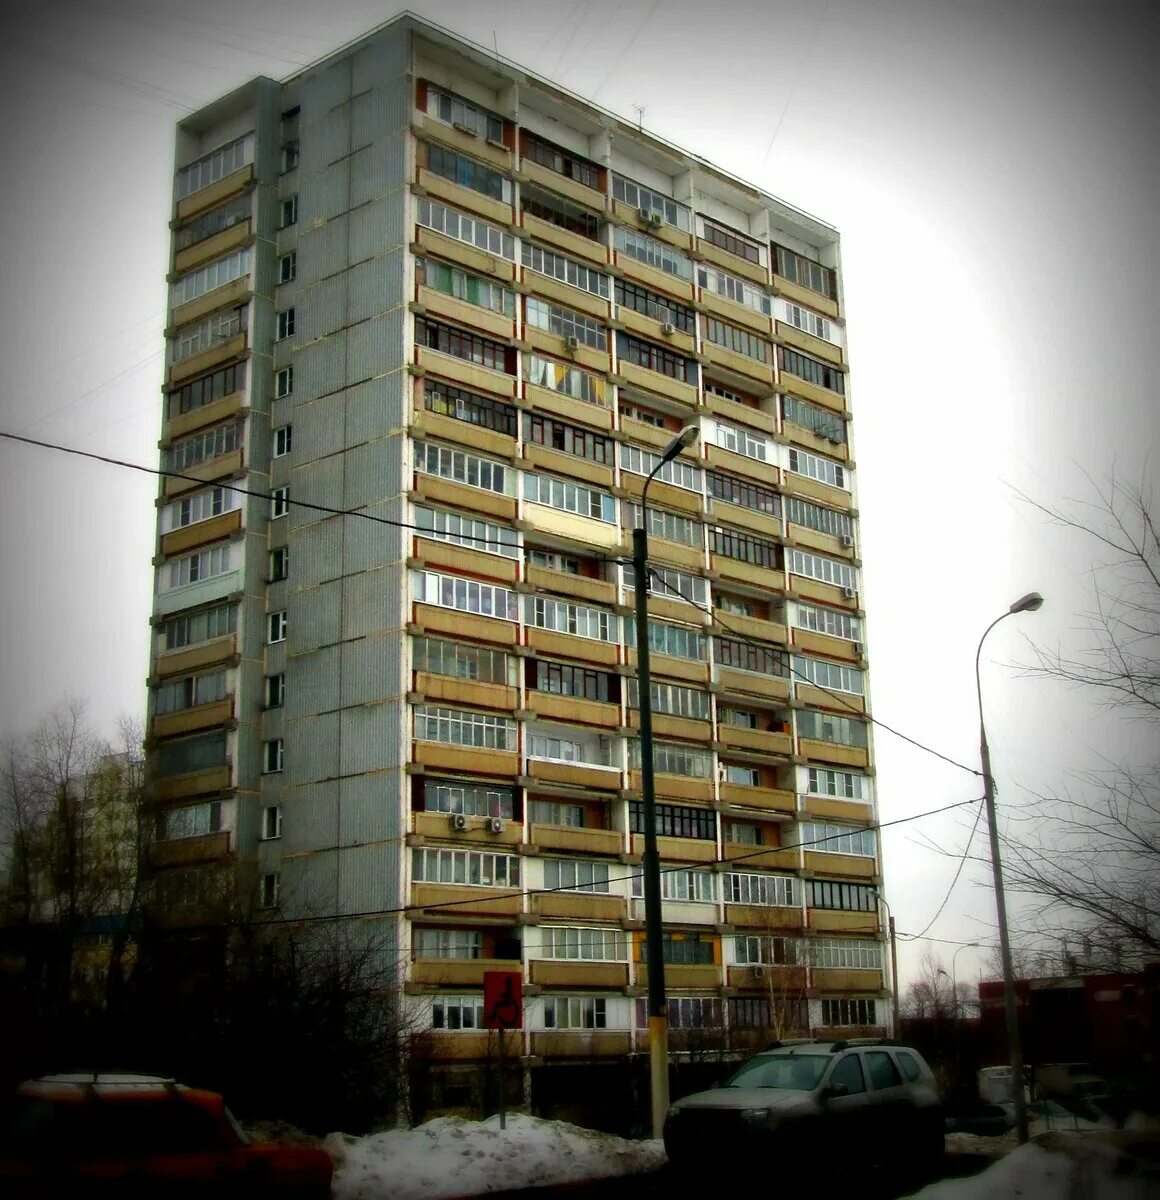 Этажного панельного. Панельная 9-ти этажка. Панельная 9ти этажка в Москве. Одноподъездный 16 этажный панельный Лианозово. Брежневка 16 этажей.